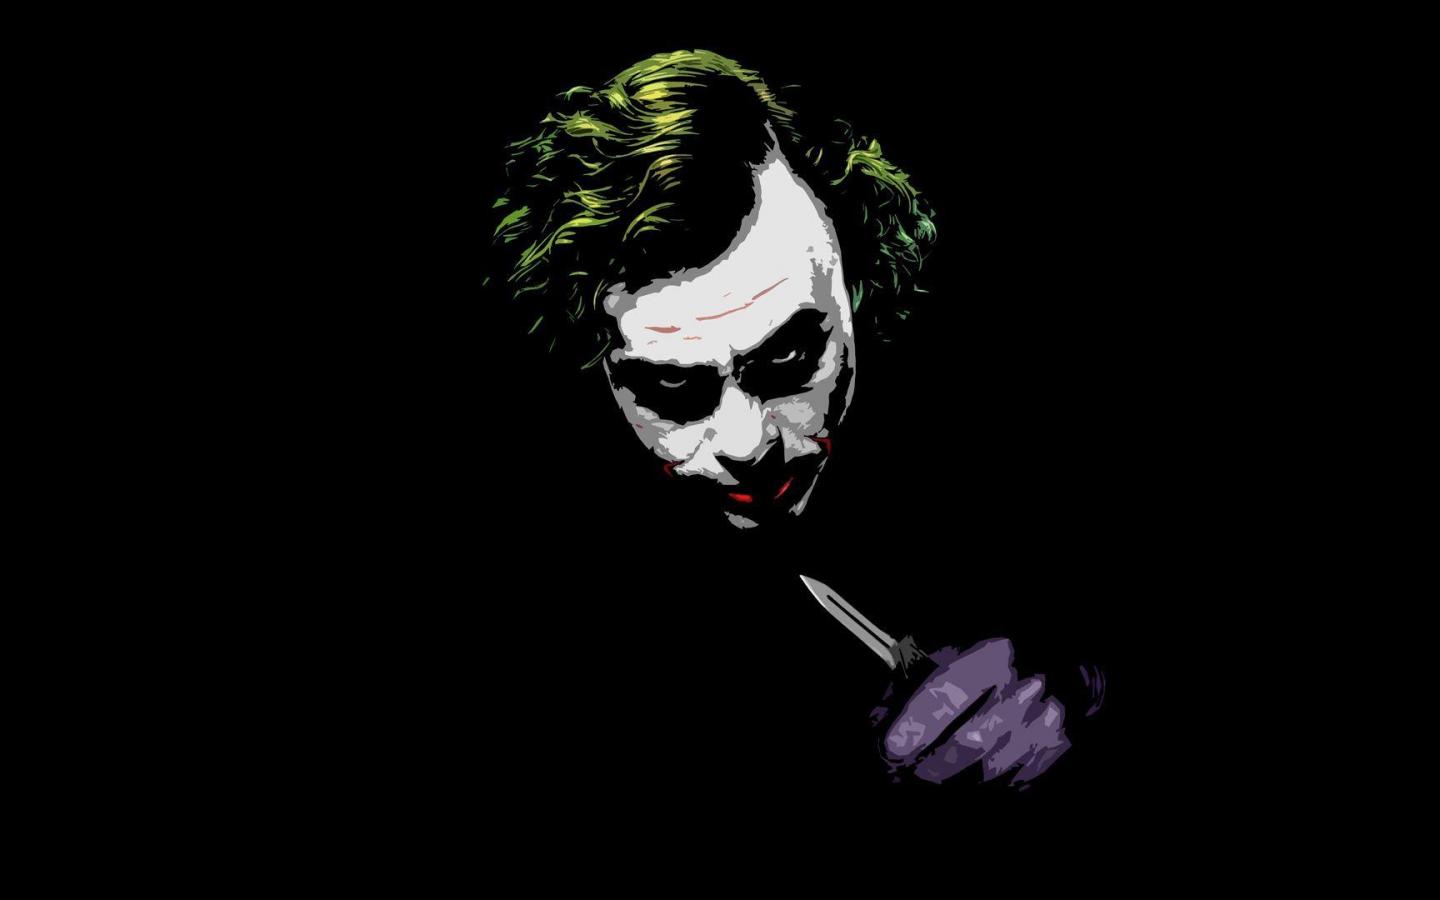 [75+] Joker Wallpaper Dark Knight | WallpaperSafari.com